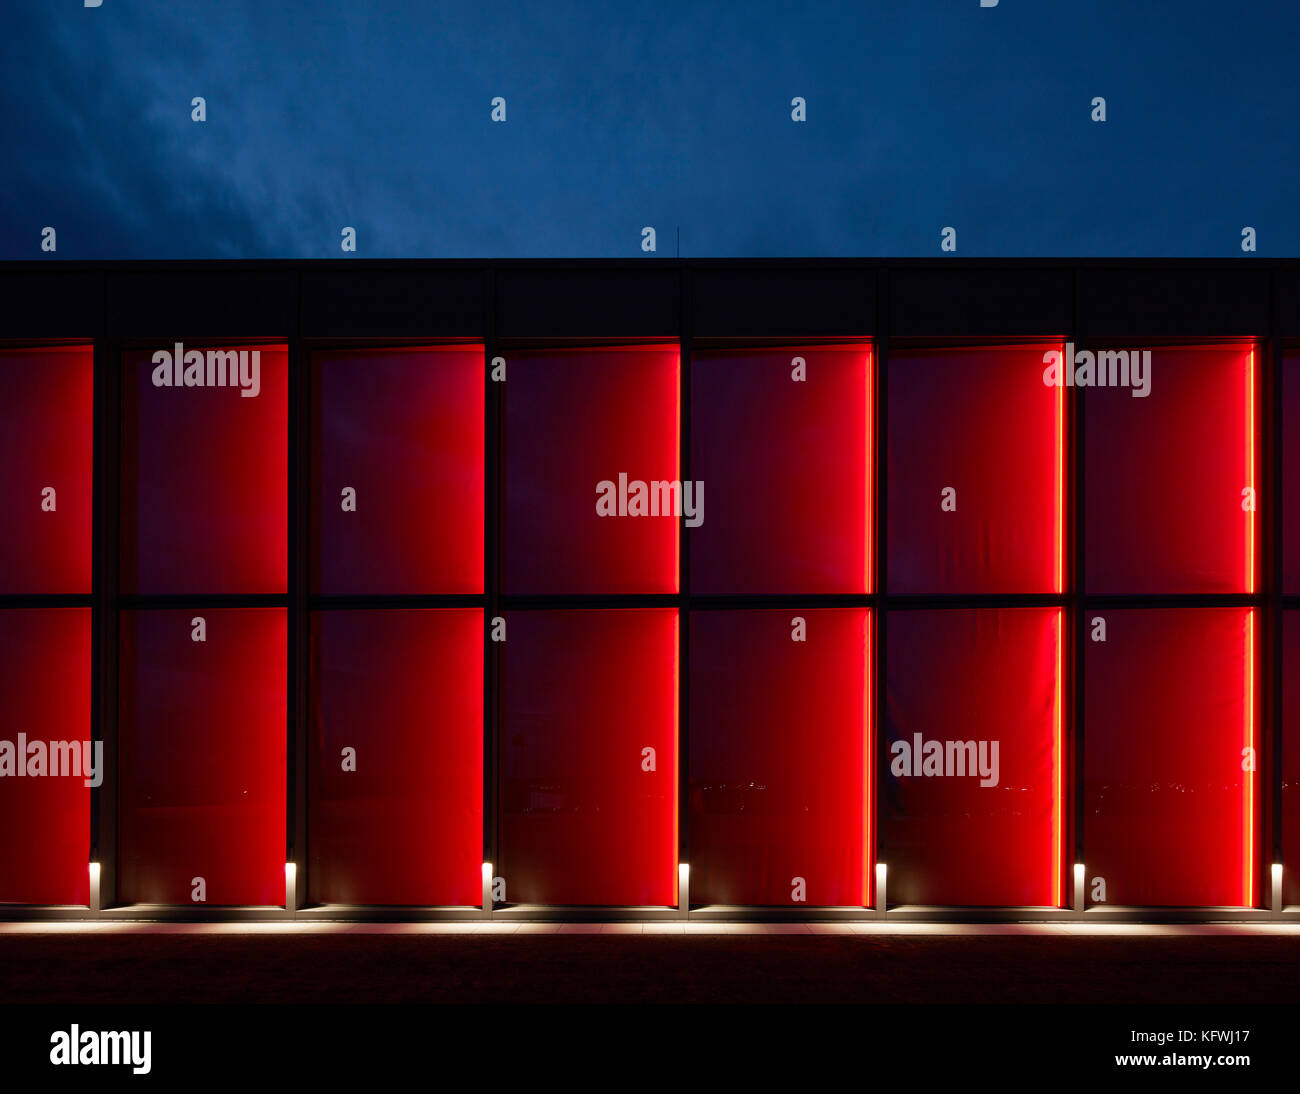 Nacht - Beleuchtung in Rot. Carmen Würth Forum, Künzelsau-Gaisbach,  Deutschland. Architekt: David Chipperfield Architects Ltd., 2017  Stockfotografie - Alamy